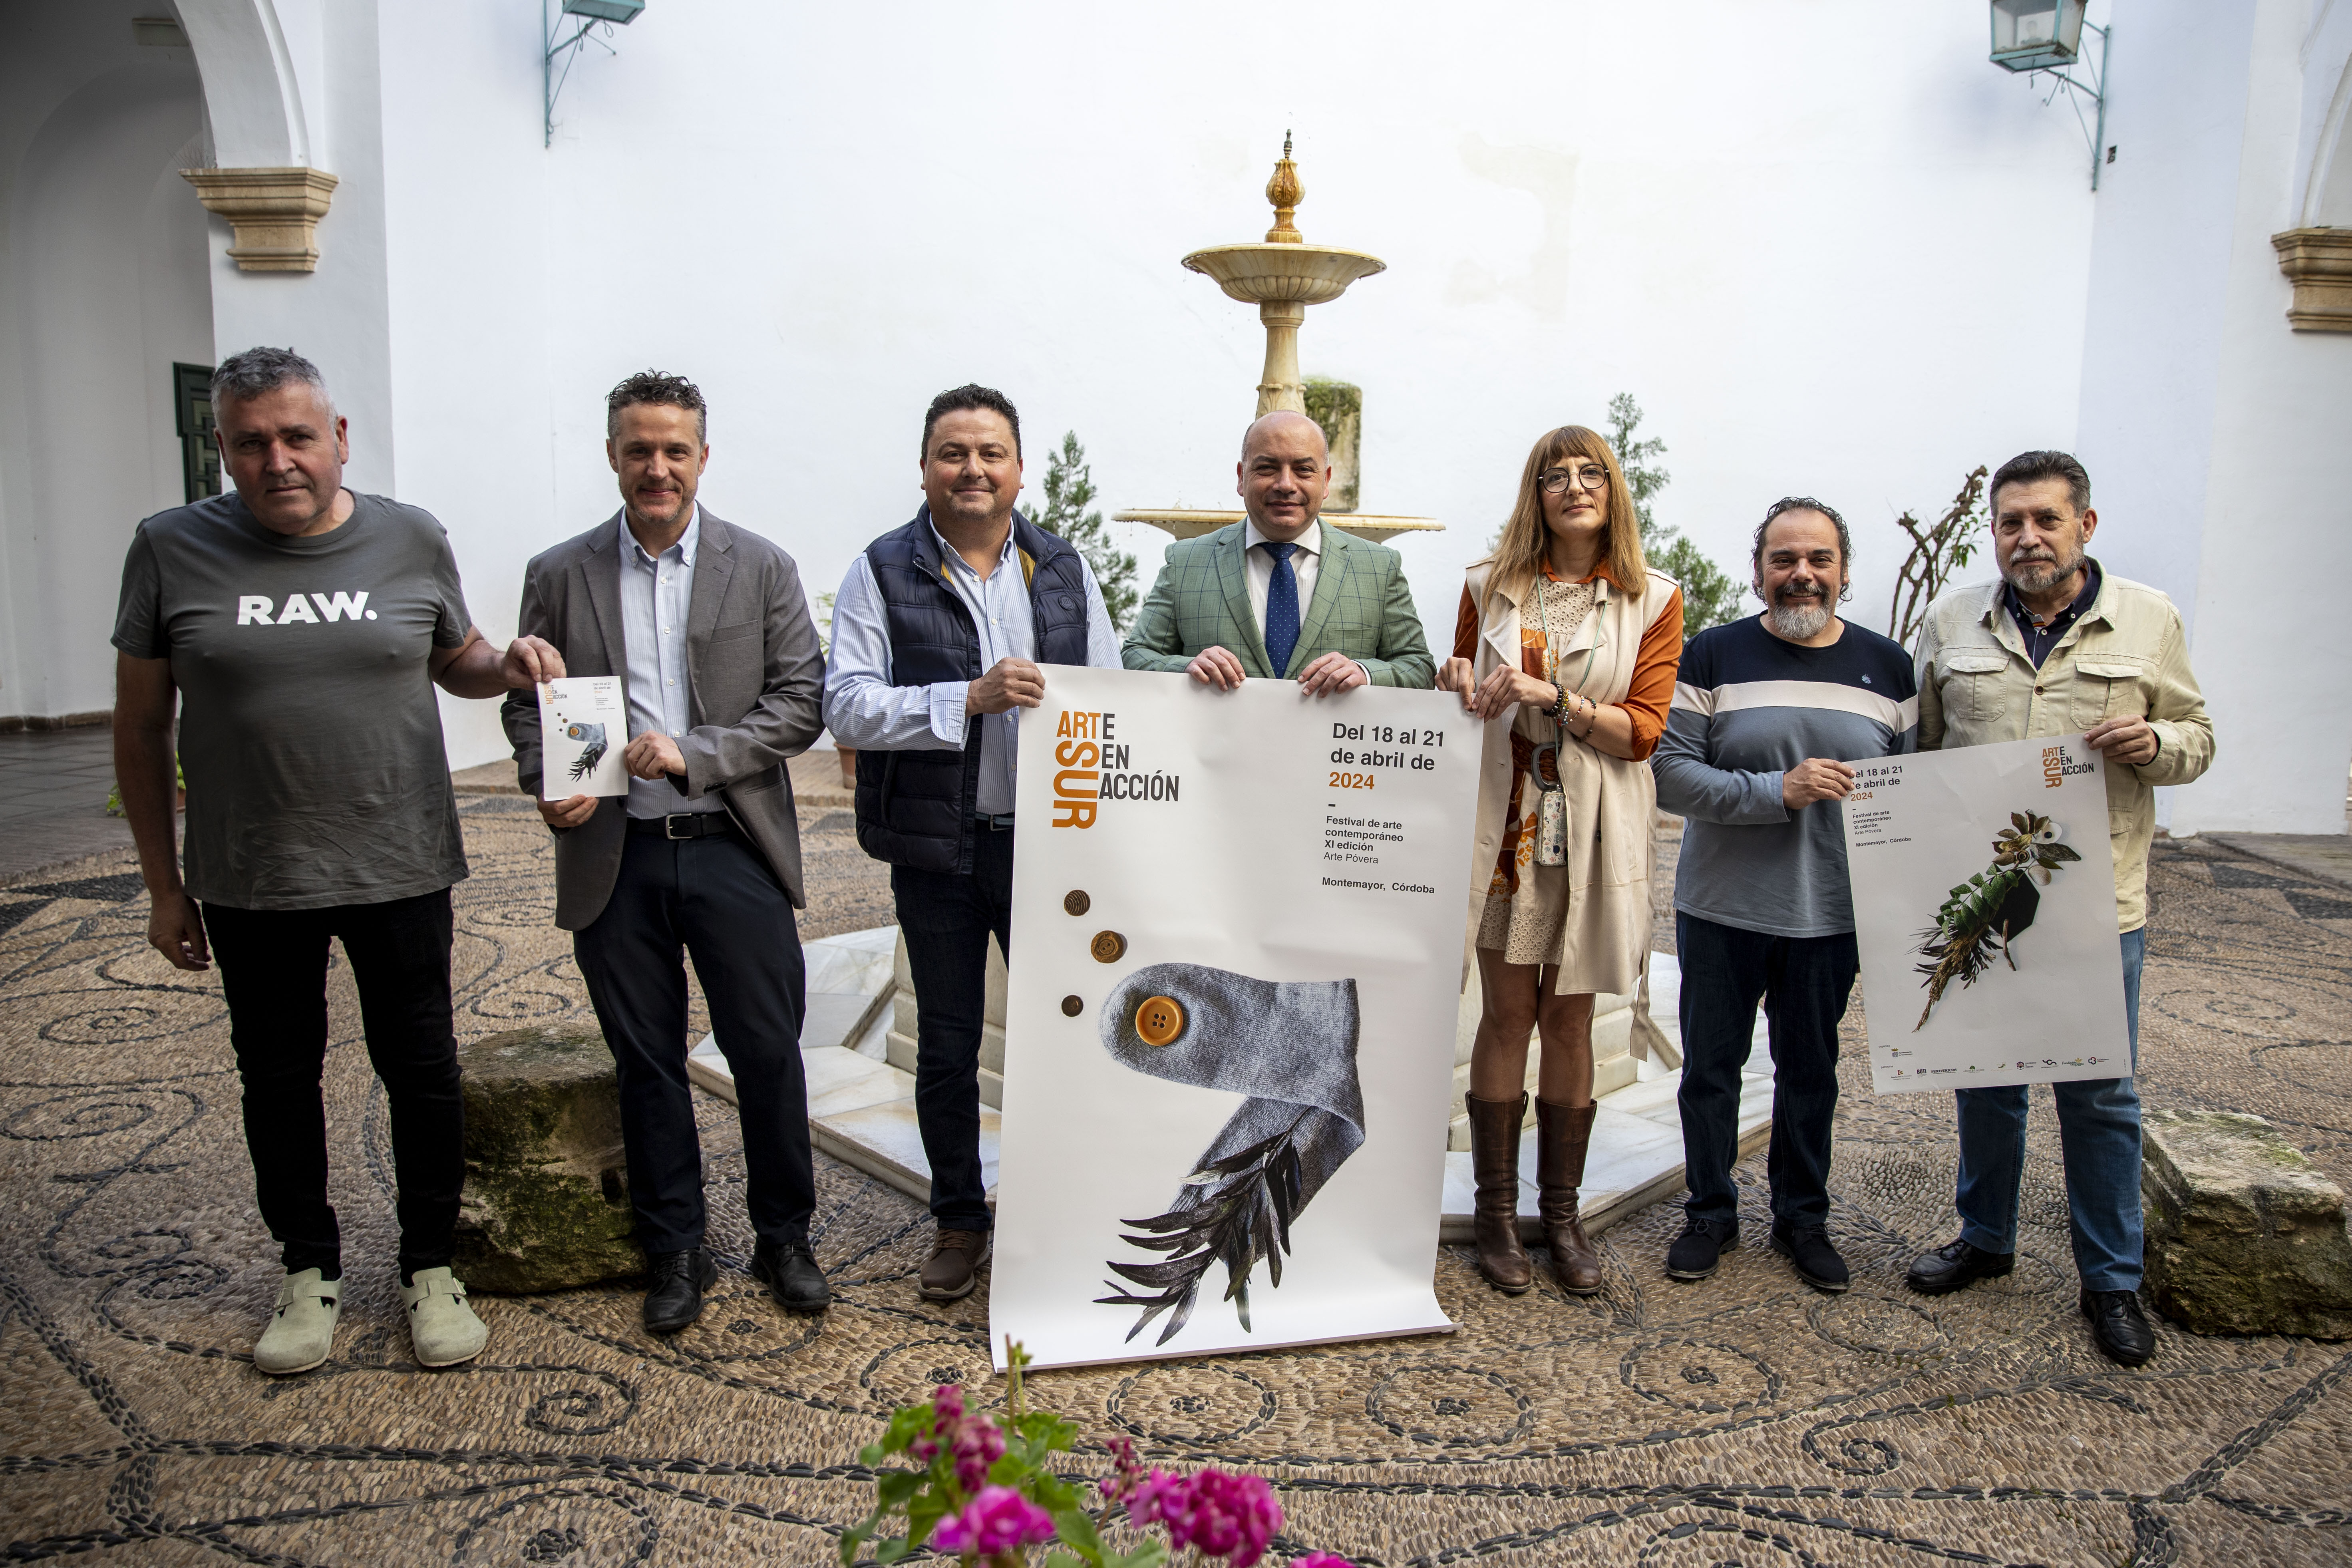 ART SUR vuelve a Montemayor con la undécima edición del festival de arte italiano en acción